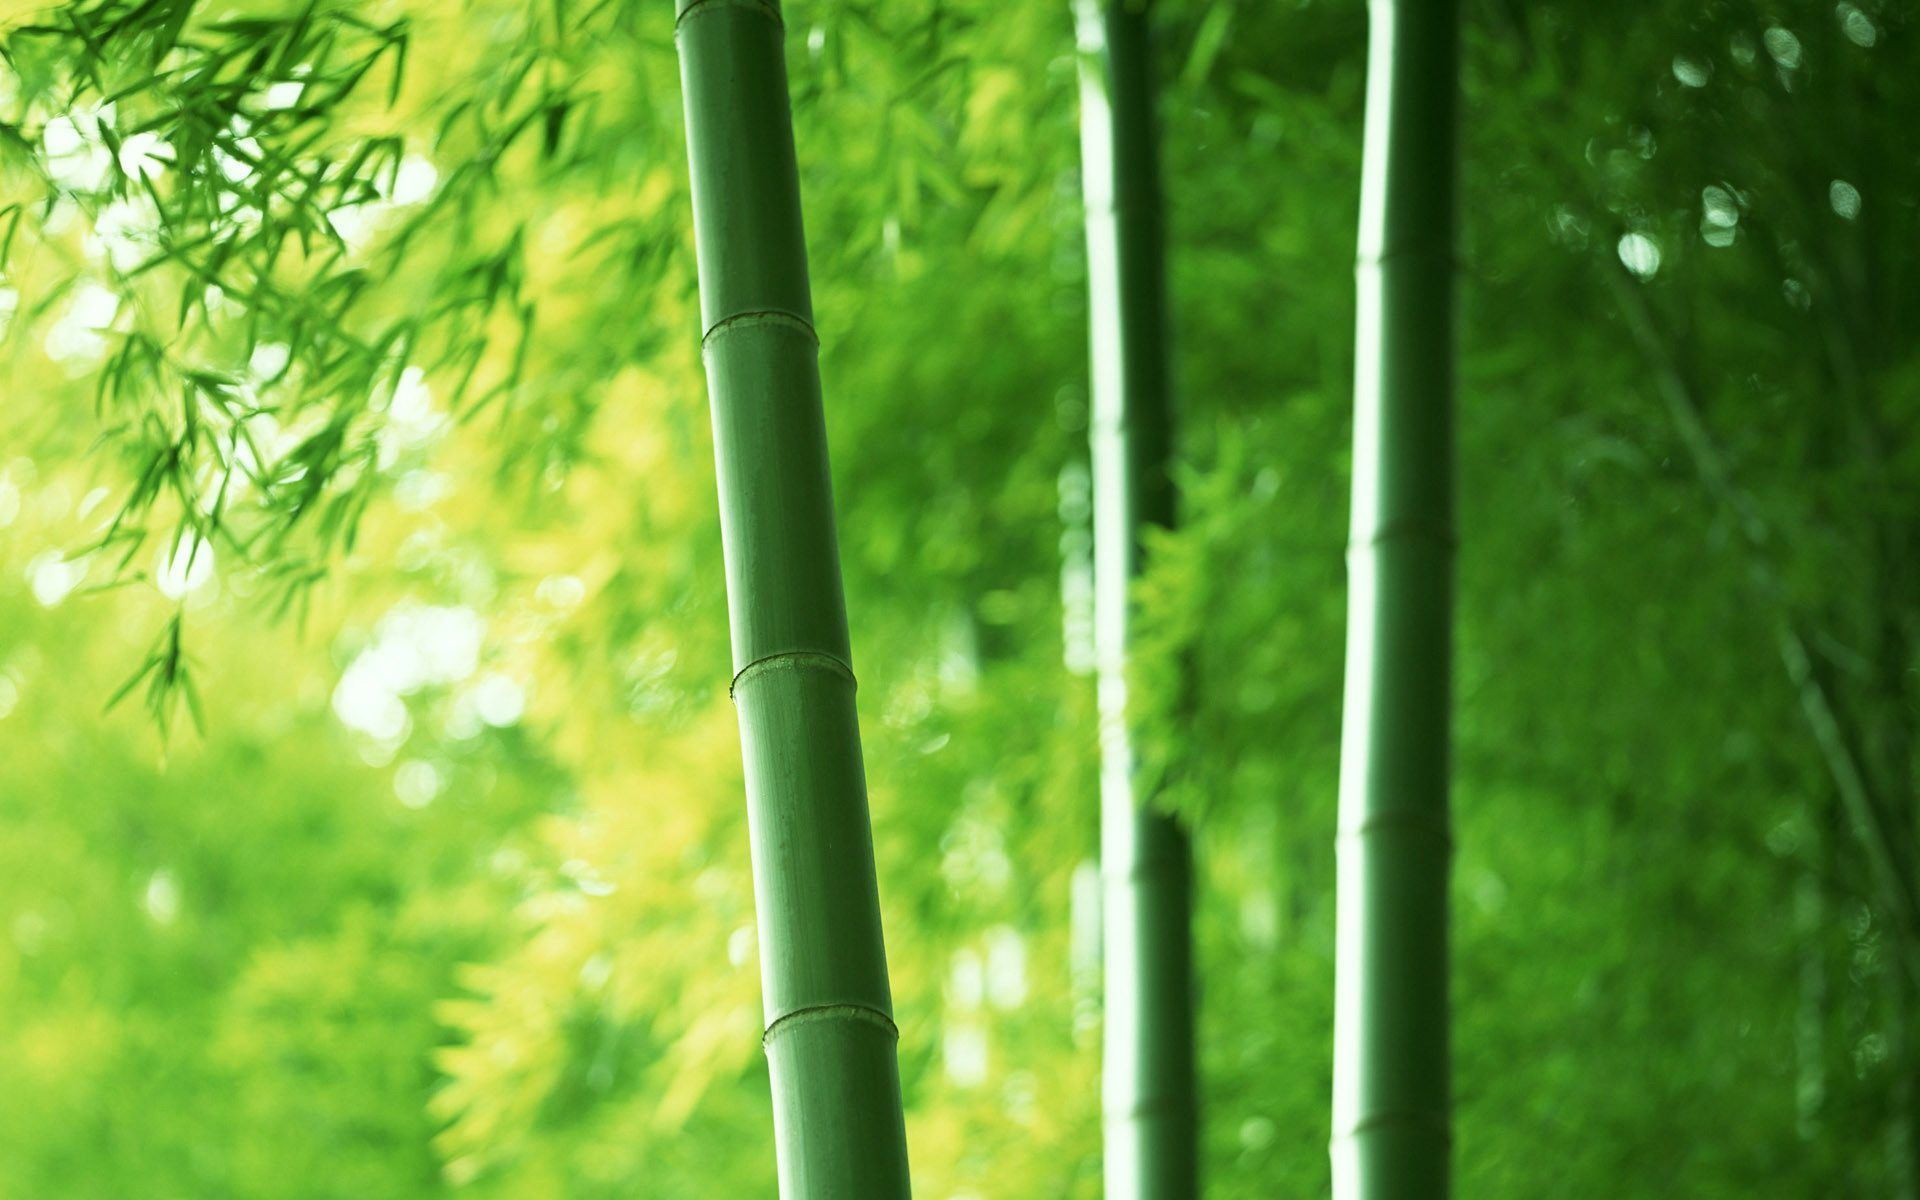 Fondos de pantalla de bambú - FondosMil